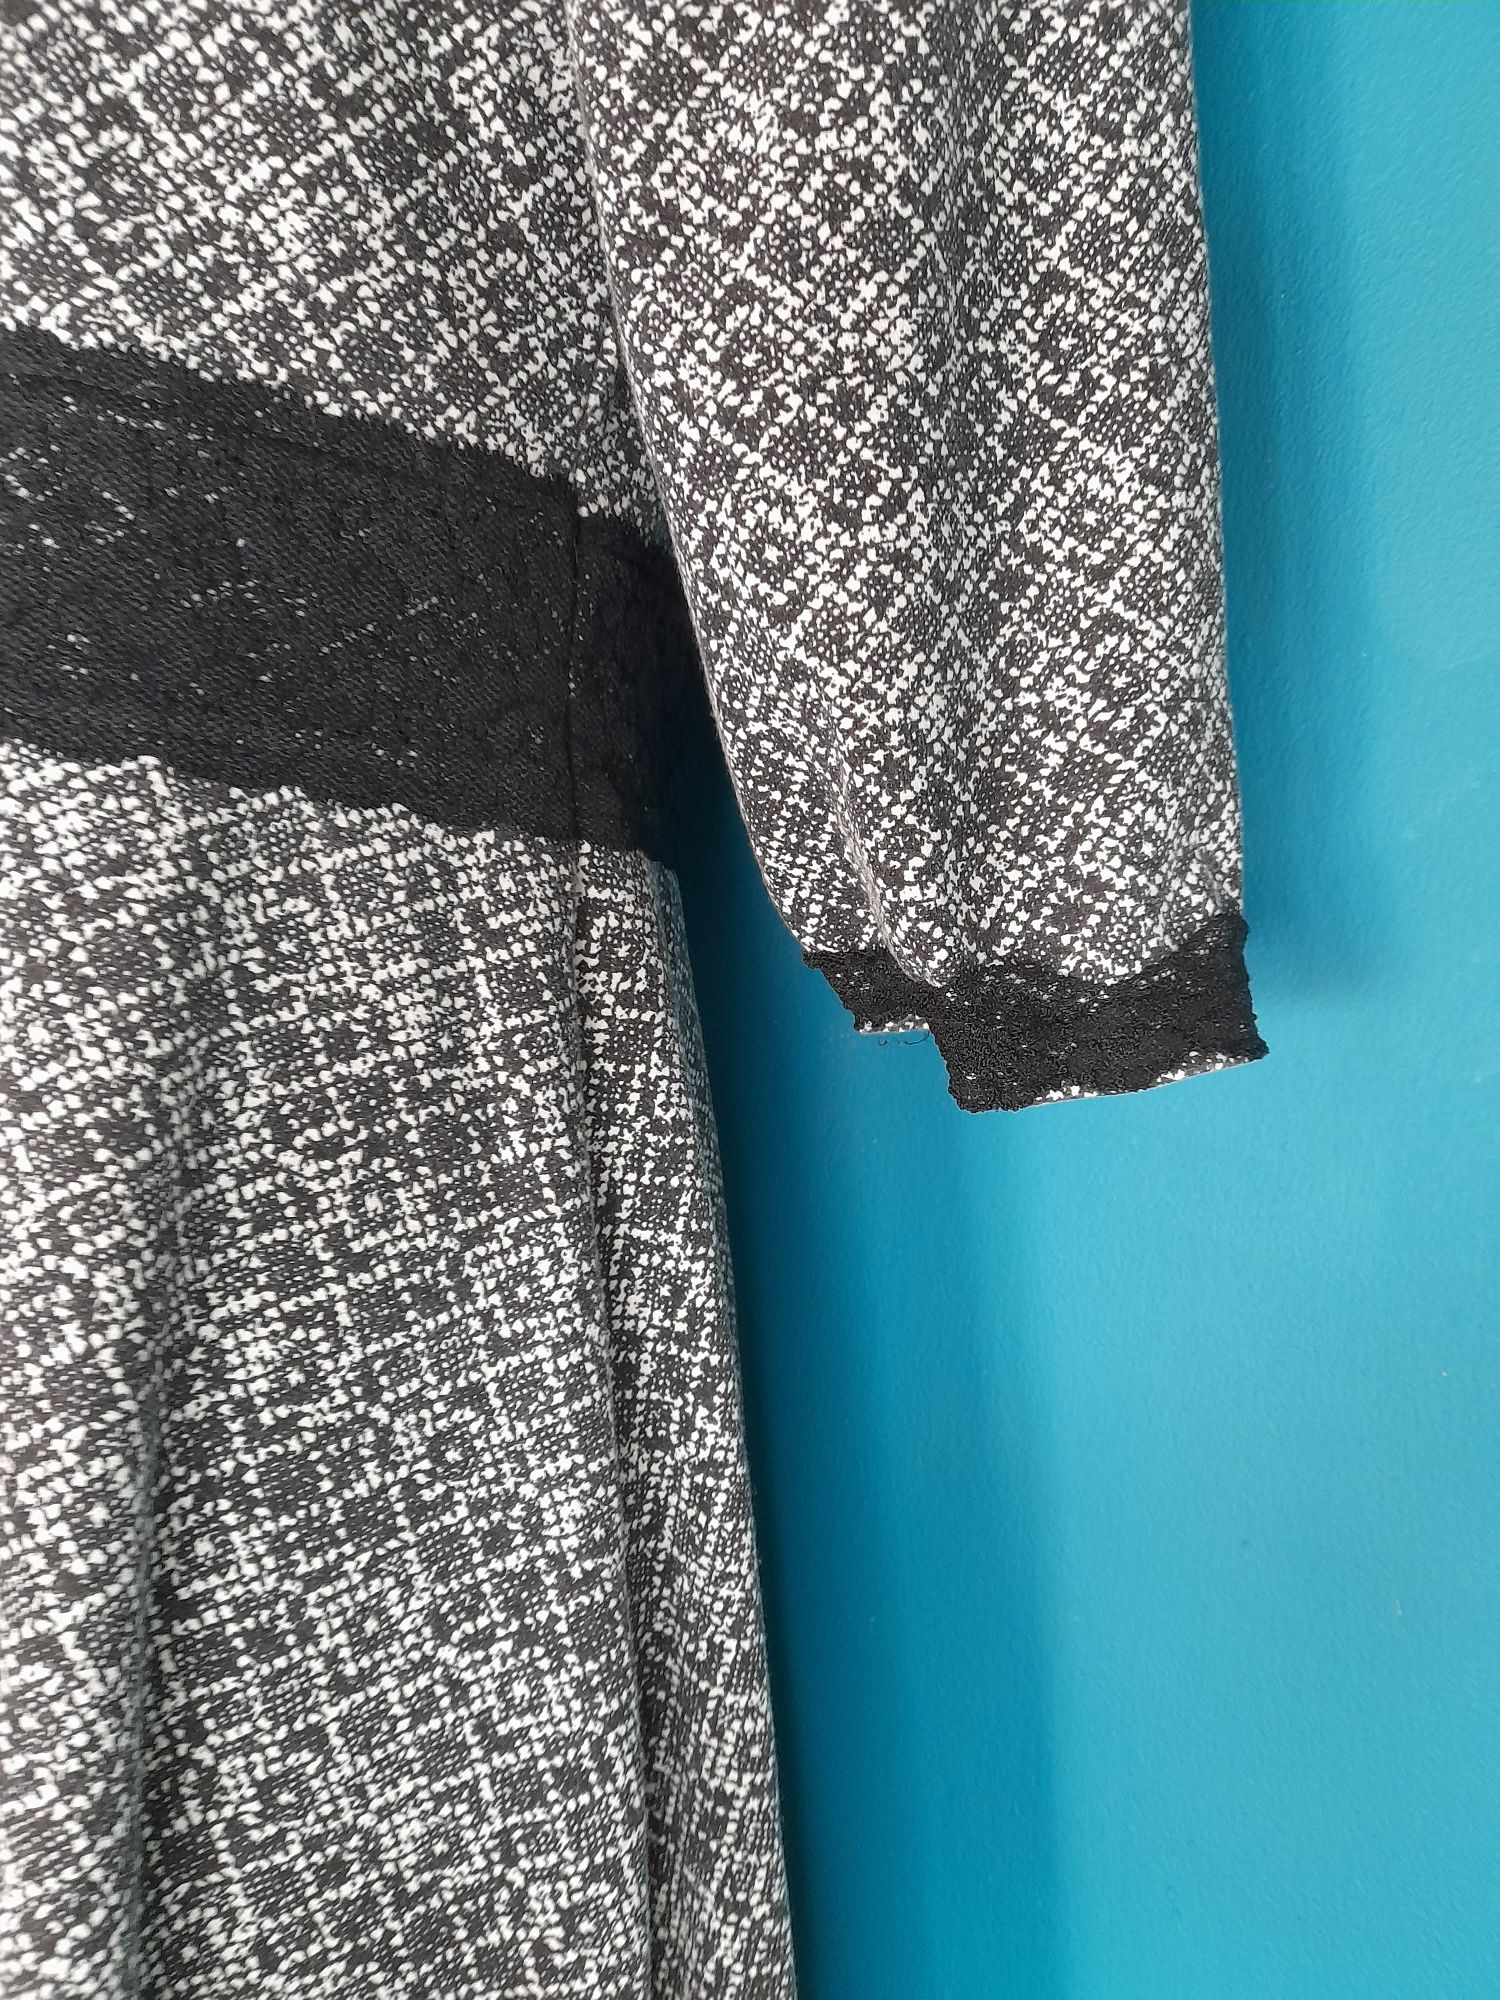 Biała czarna z koronką print  sukienka damska midi rękaw 3/4  42 xl